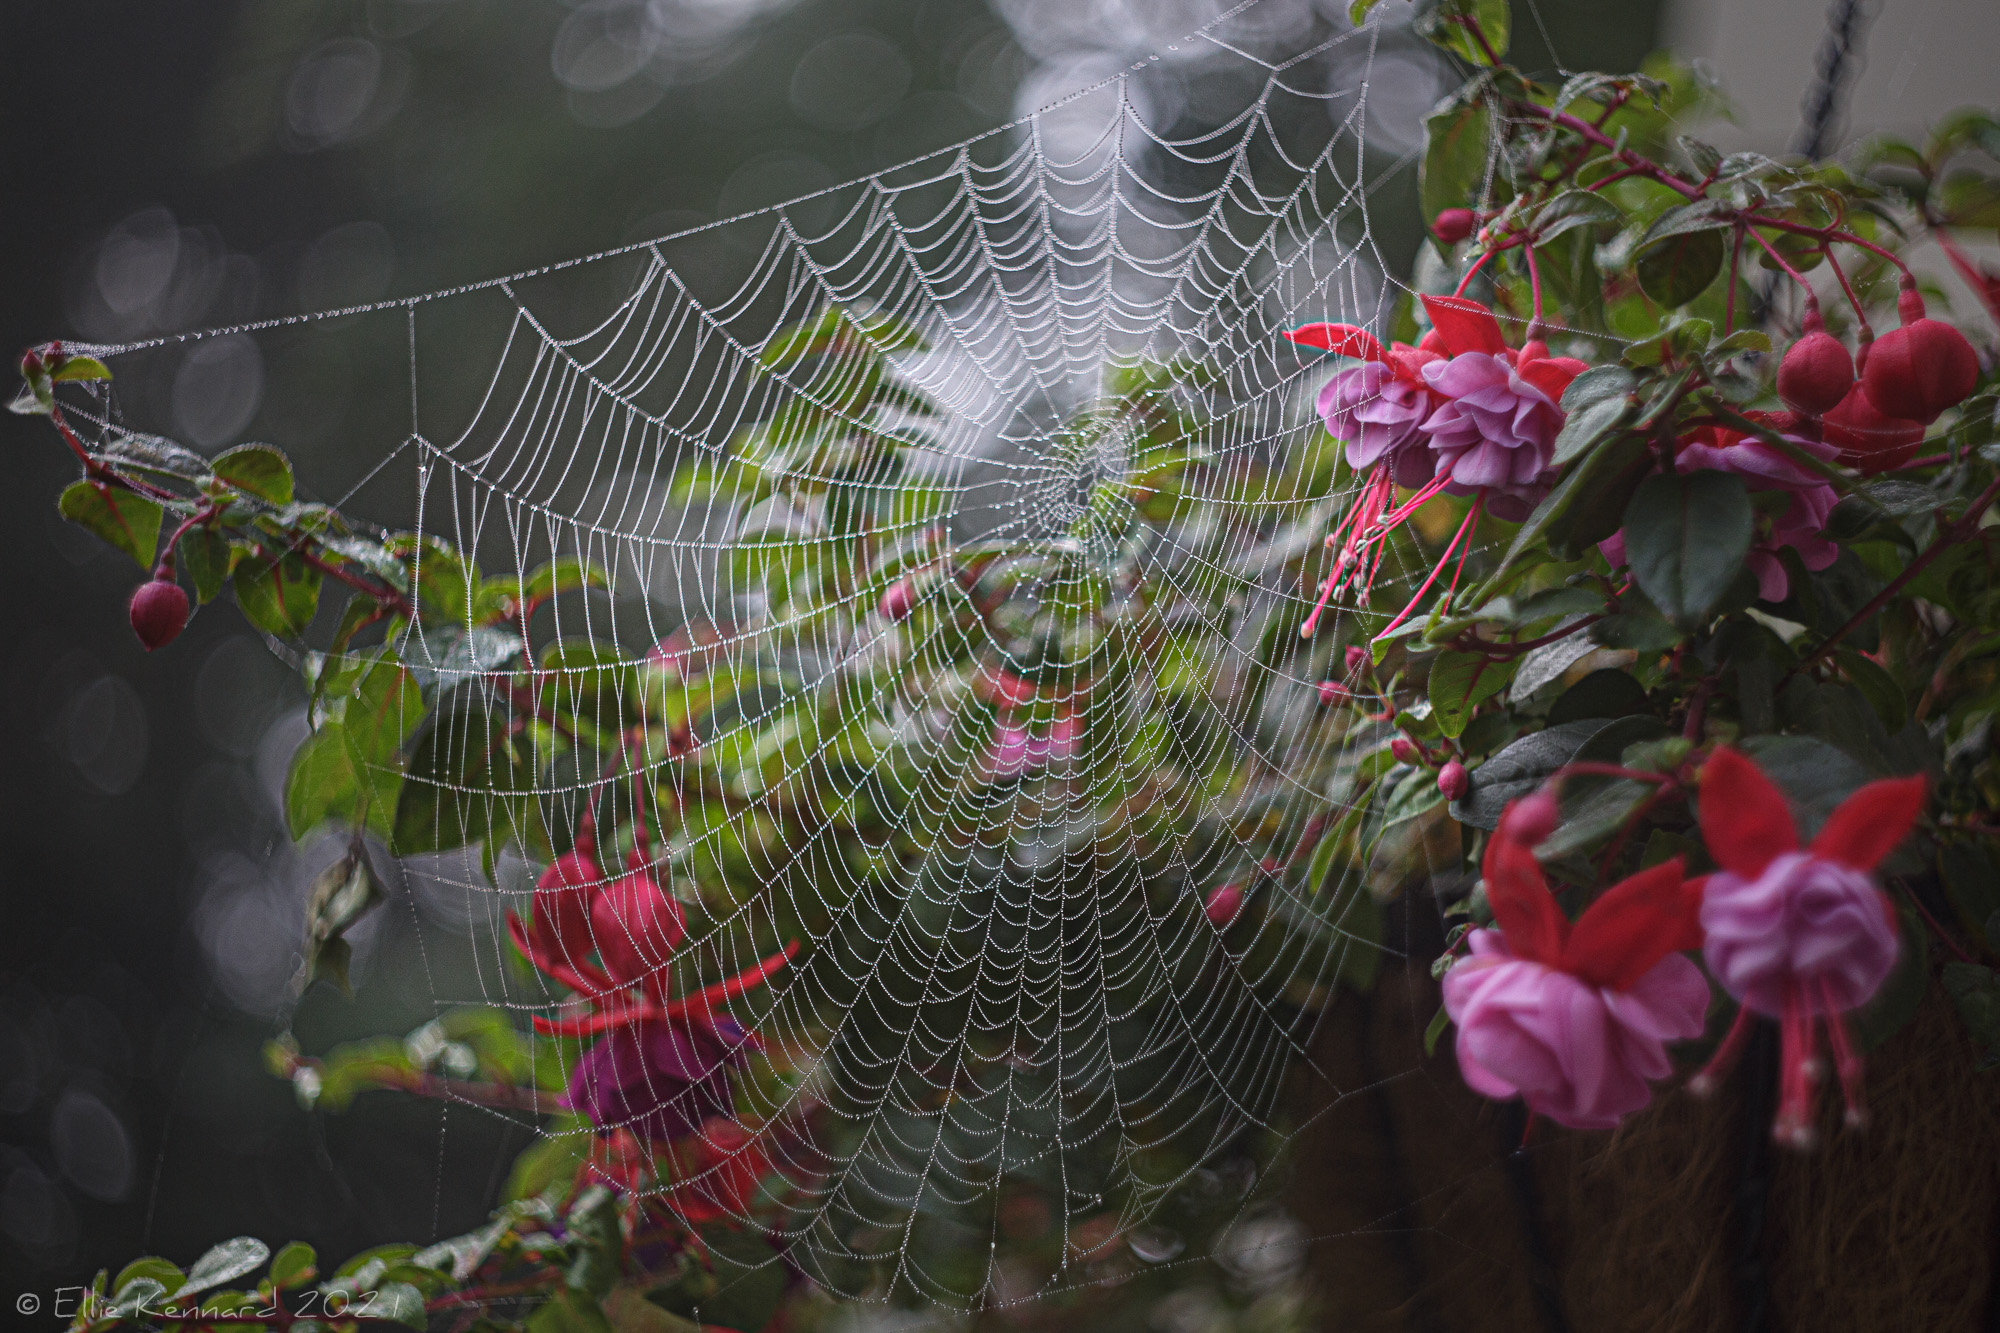 Spider Web and Fuschias